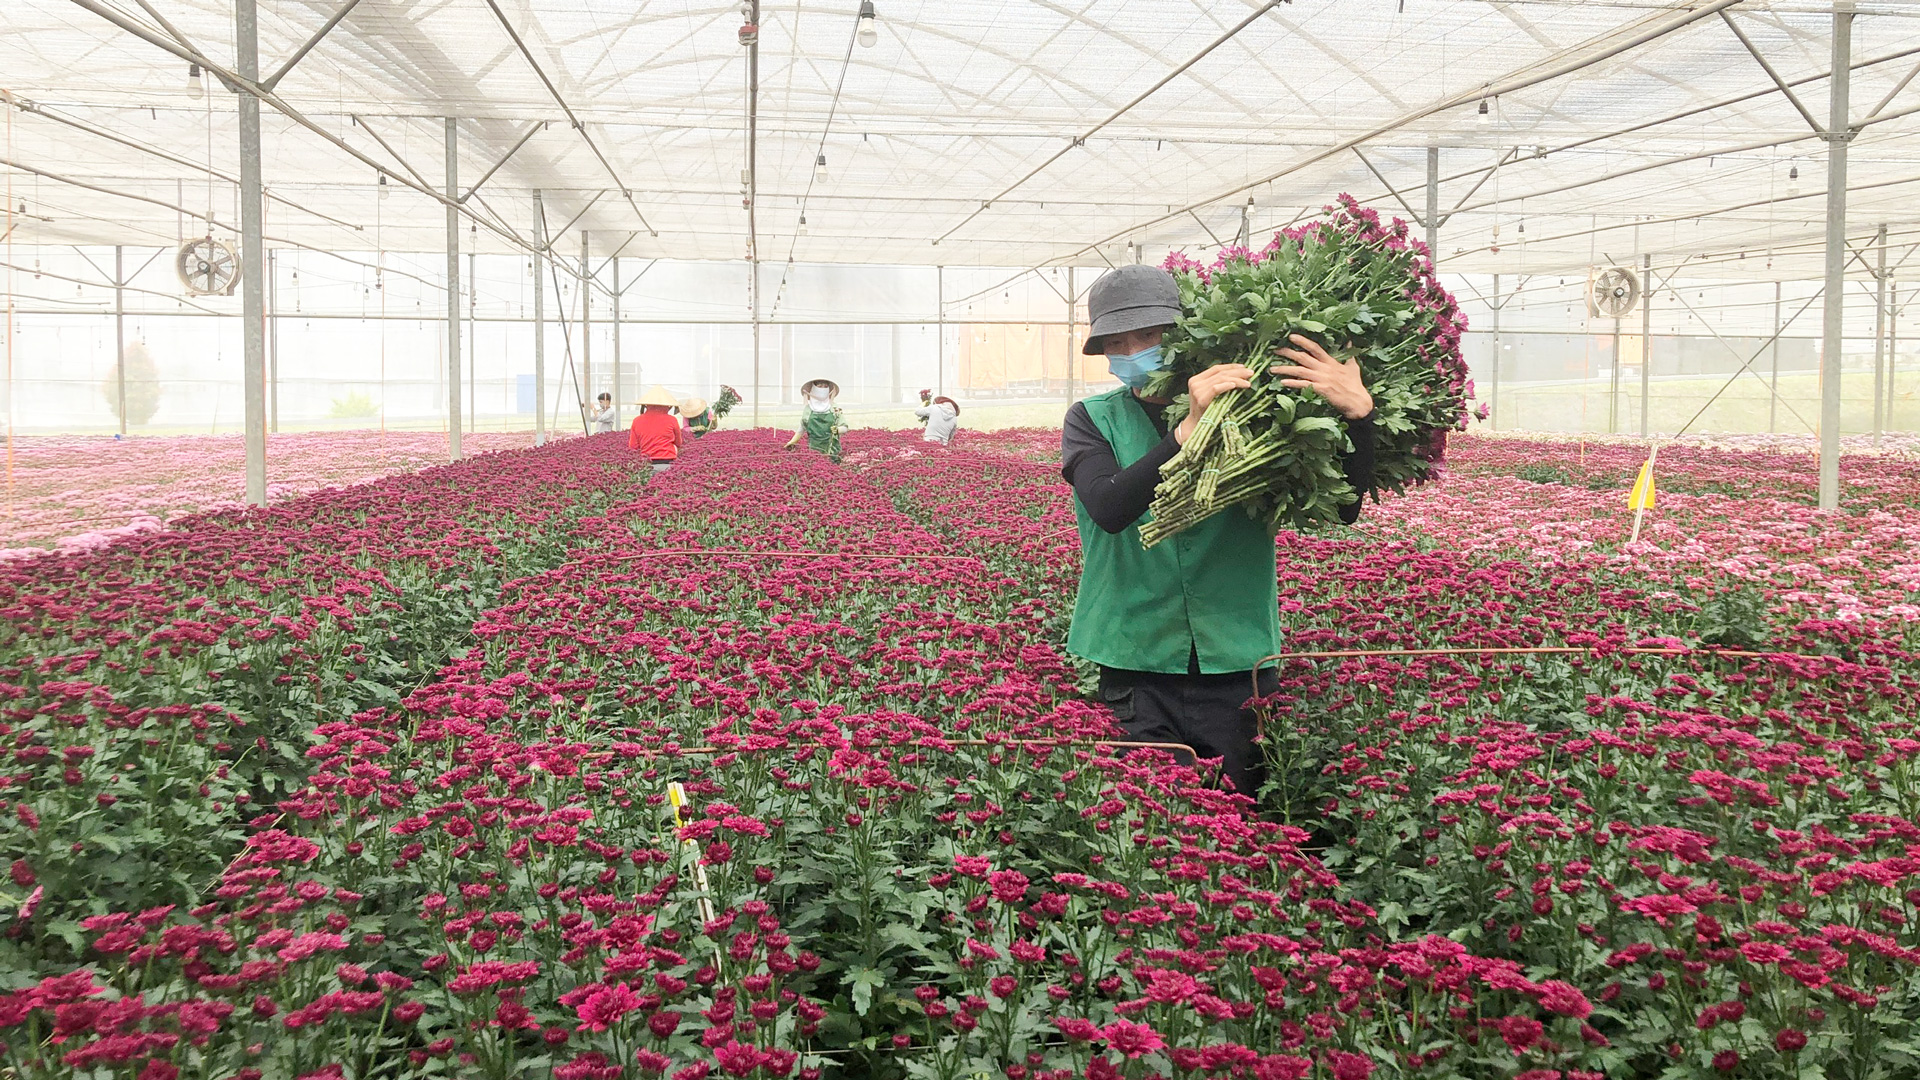 Người Lâm Đồng luôn lựa chọn và ưu tiên sử dụng hàng hóa được trồng, sản xuất tại địa phương đảm bảo an toàn, chất lượng